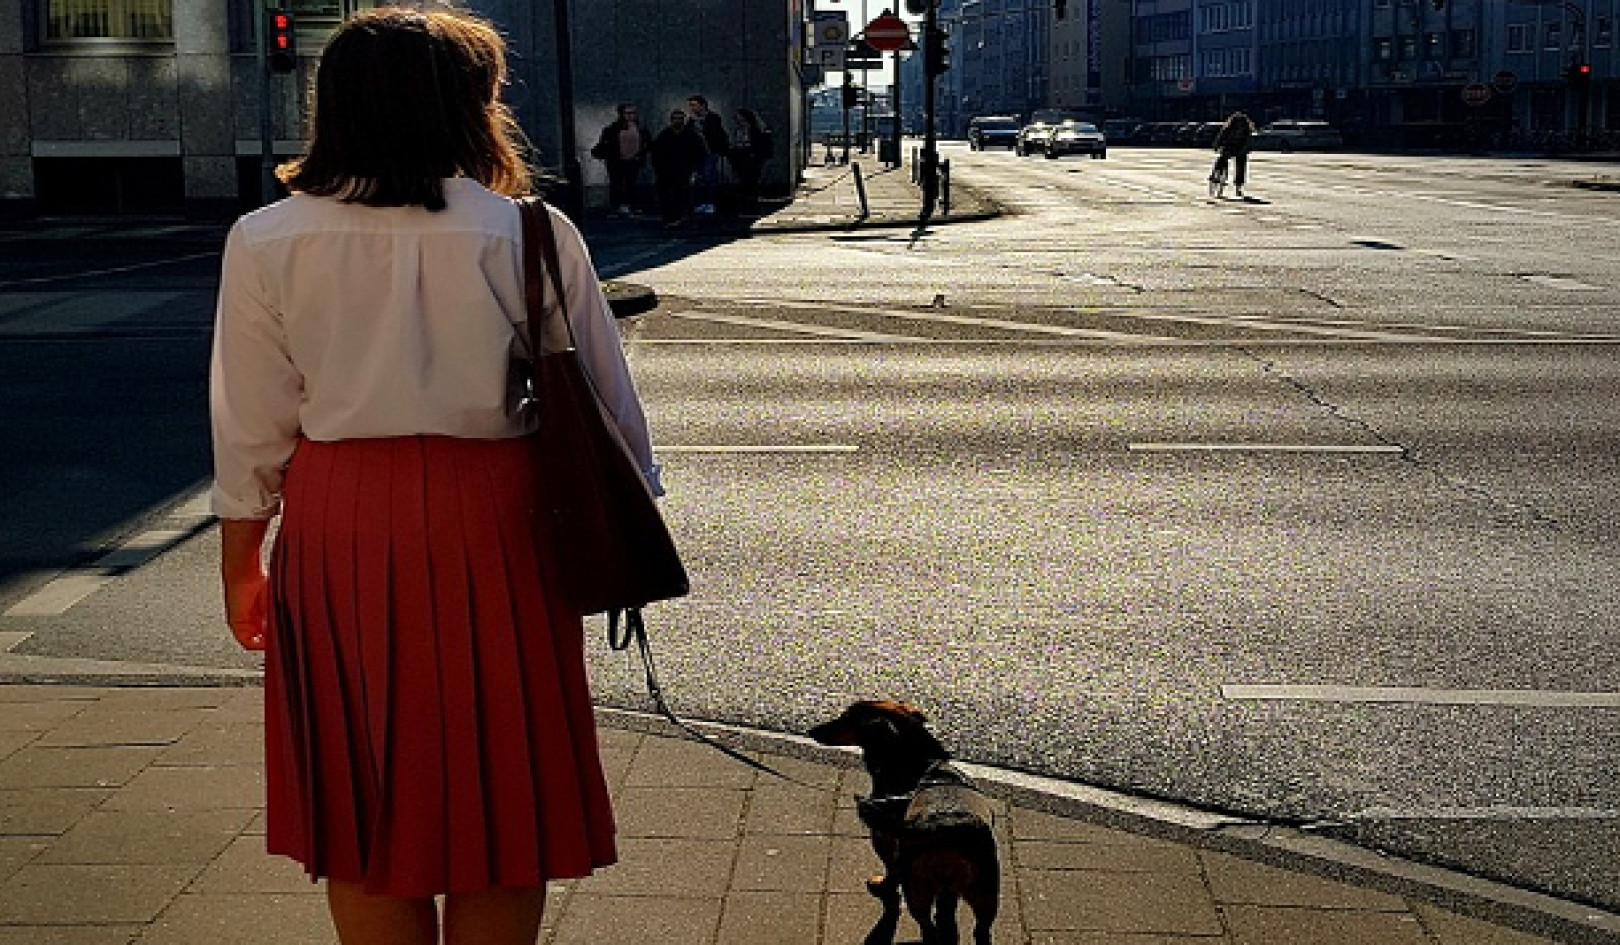 वह कुत्ता जो नहीं भौंका: विरोध प्रदर्शन के लिए ट्रम्प का अनुत्तरित आह्वान